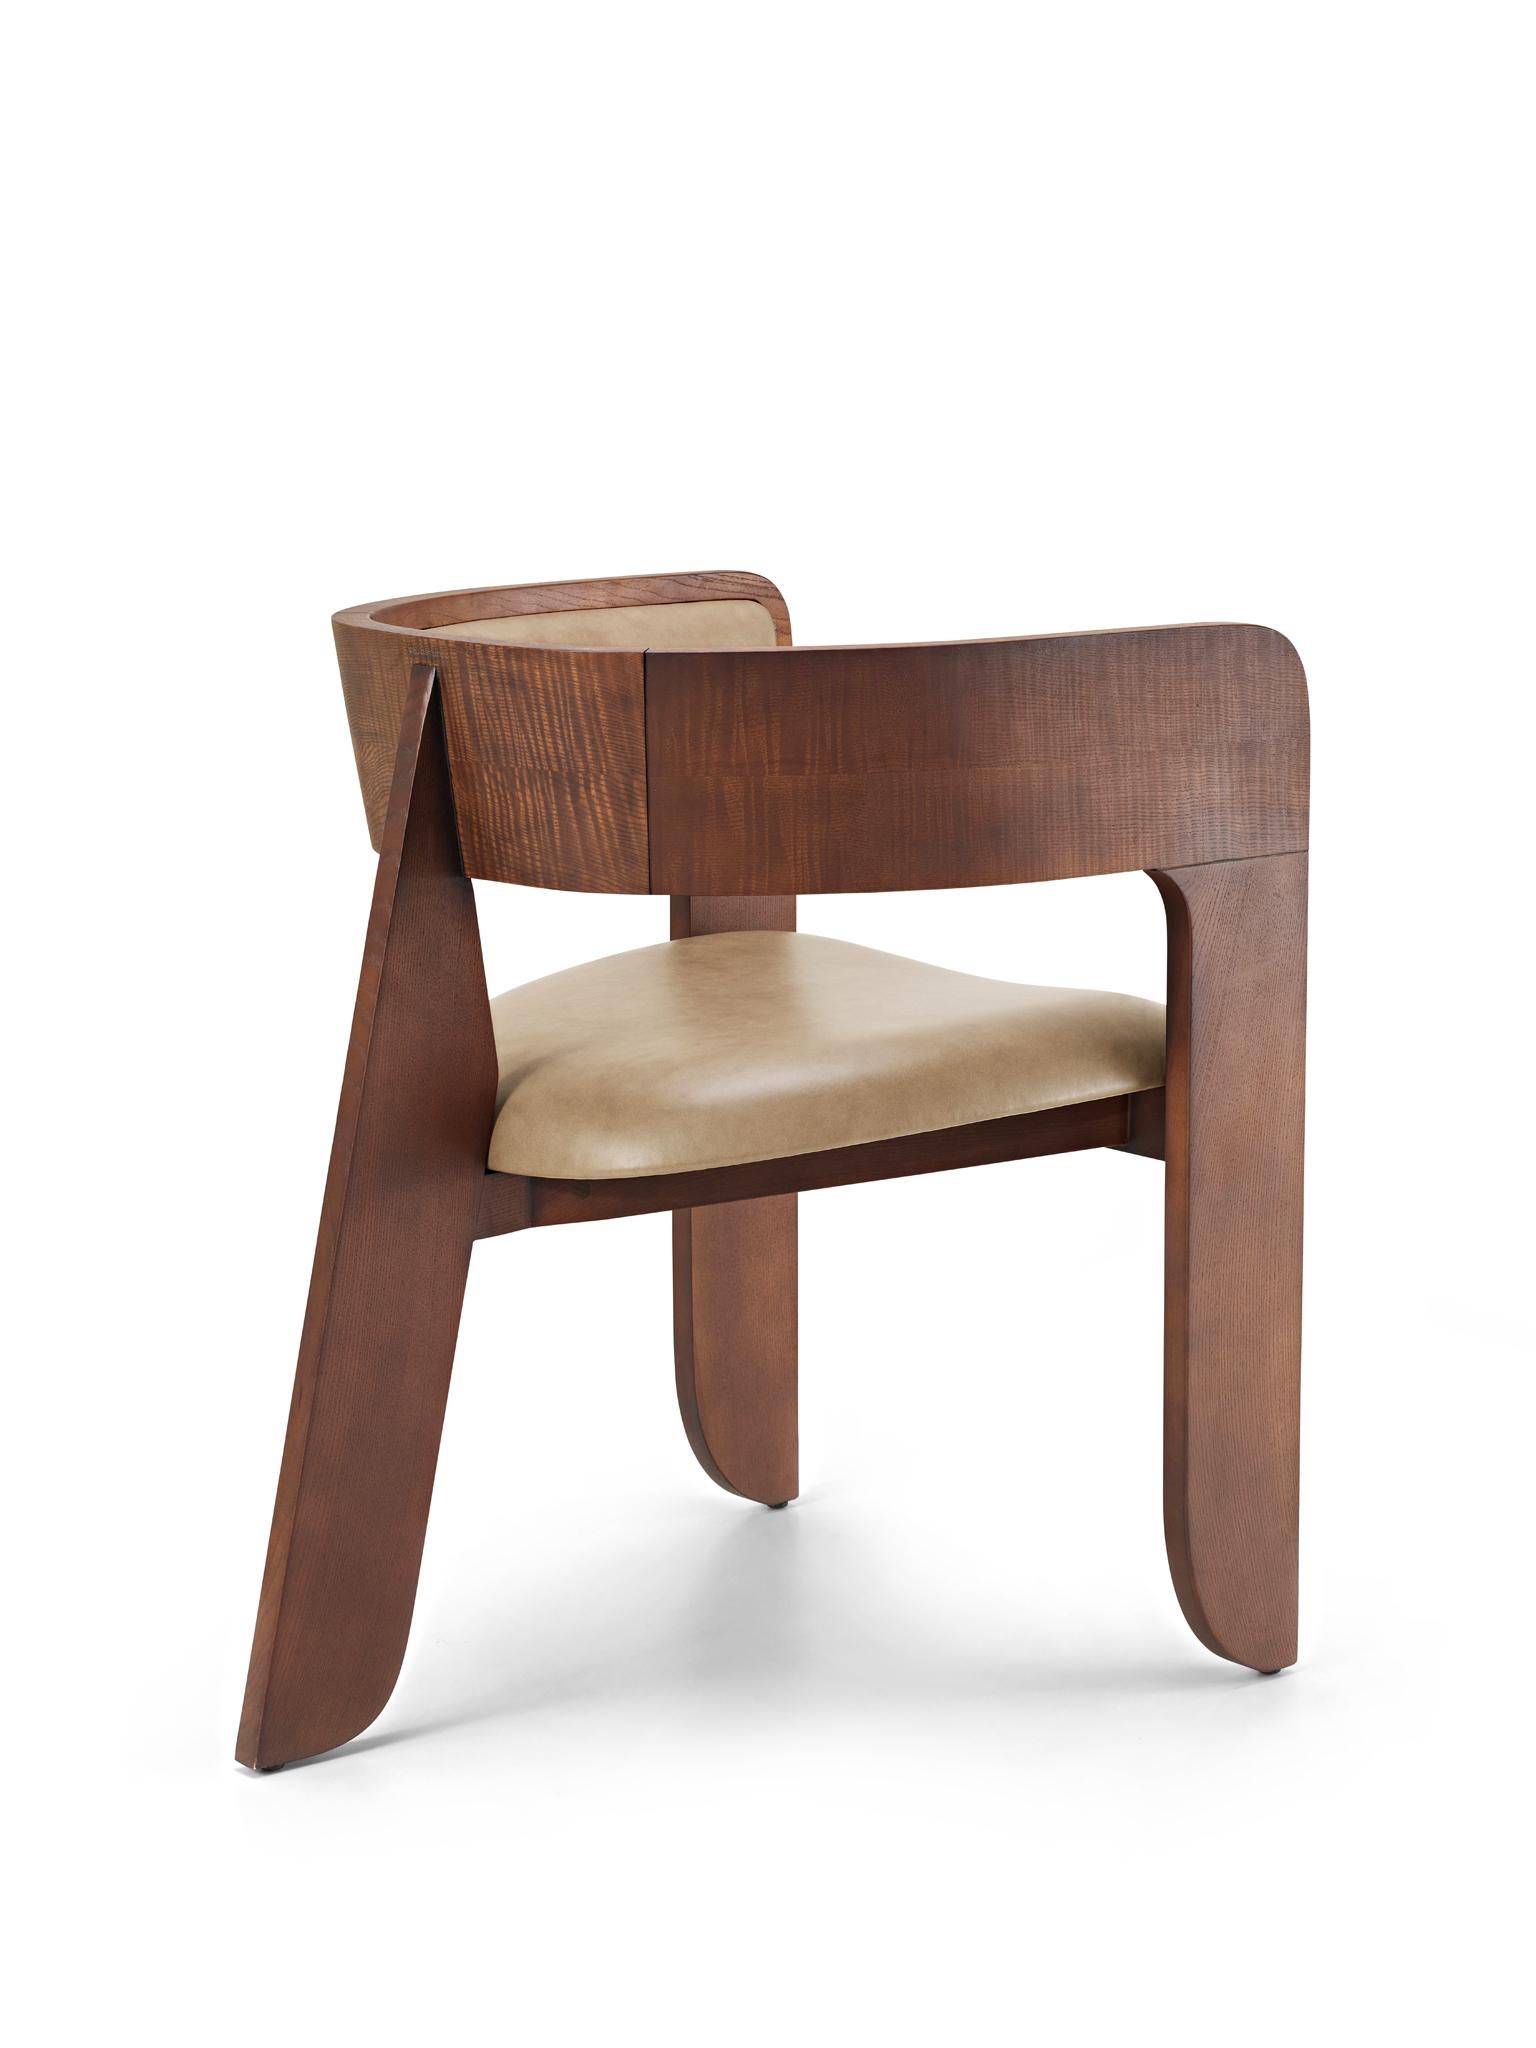 Inspiriert vom Standard-Stuhl von Jean Prouvé und als Ode an den Autor selbst, ist Jean ein Stuhl, der die Vergangenheit ehrt und gleichzeitig in die Zukunft blickt. Jean nutzt die ikonische Form des Hinterbeins und gibt ihm eine völlig neue Form.